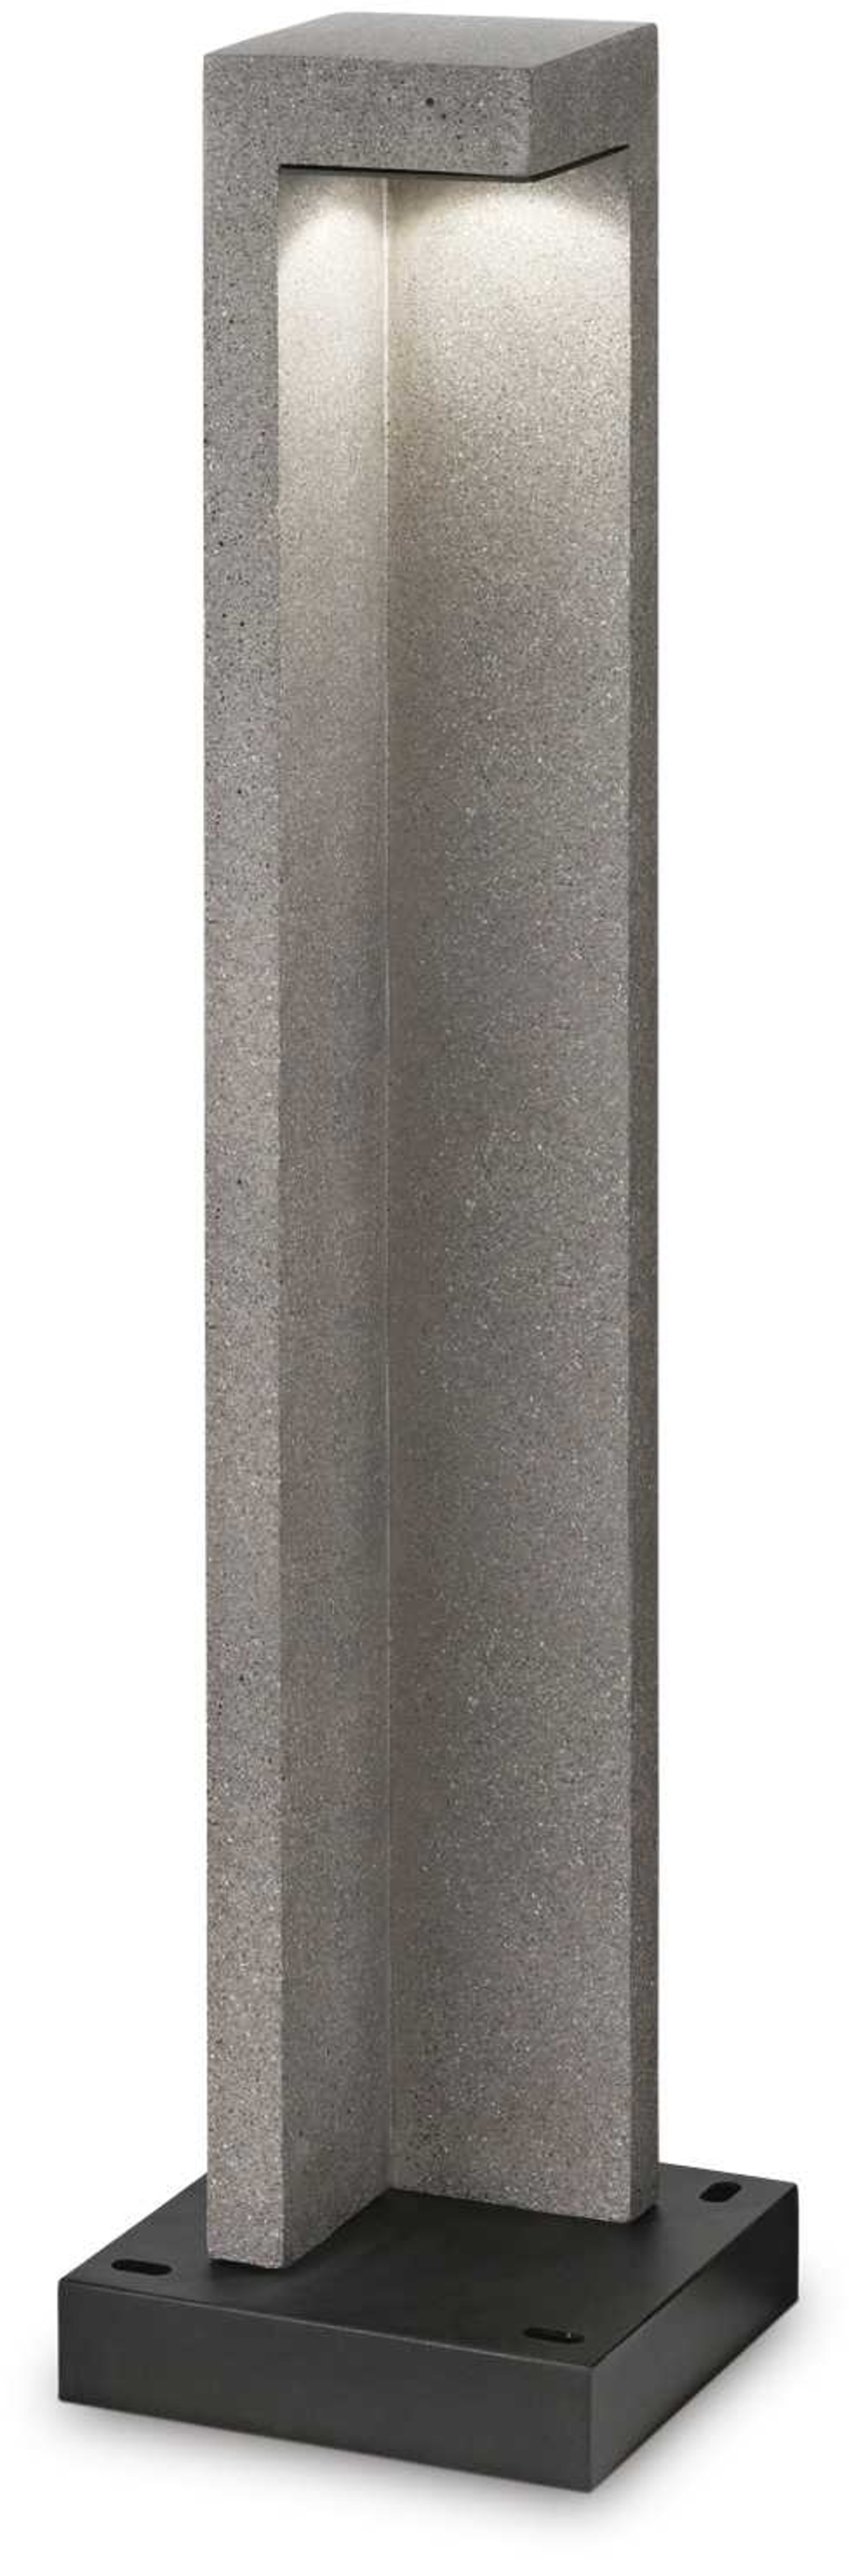 Billede af Titano, Udendørs gulvlampe, Pt, metal by Ideal Lux (H: 74 cm. x B: 18 cm. x L: 18 cm., Granit/Sort/4000 kelvin)